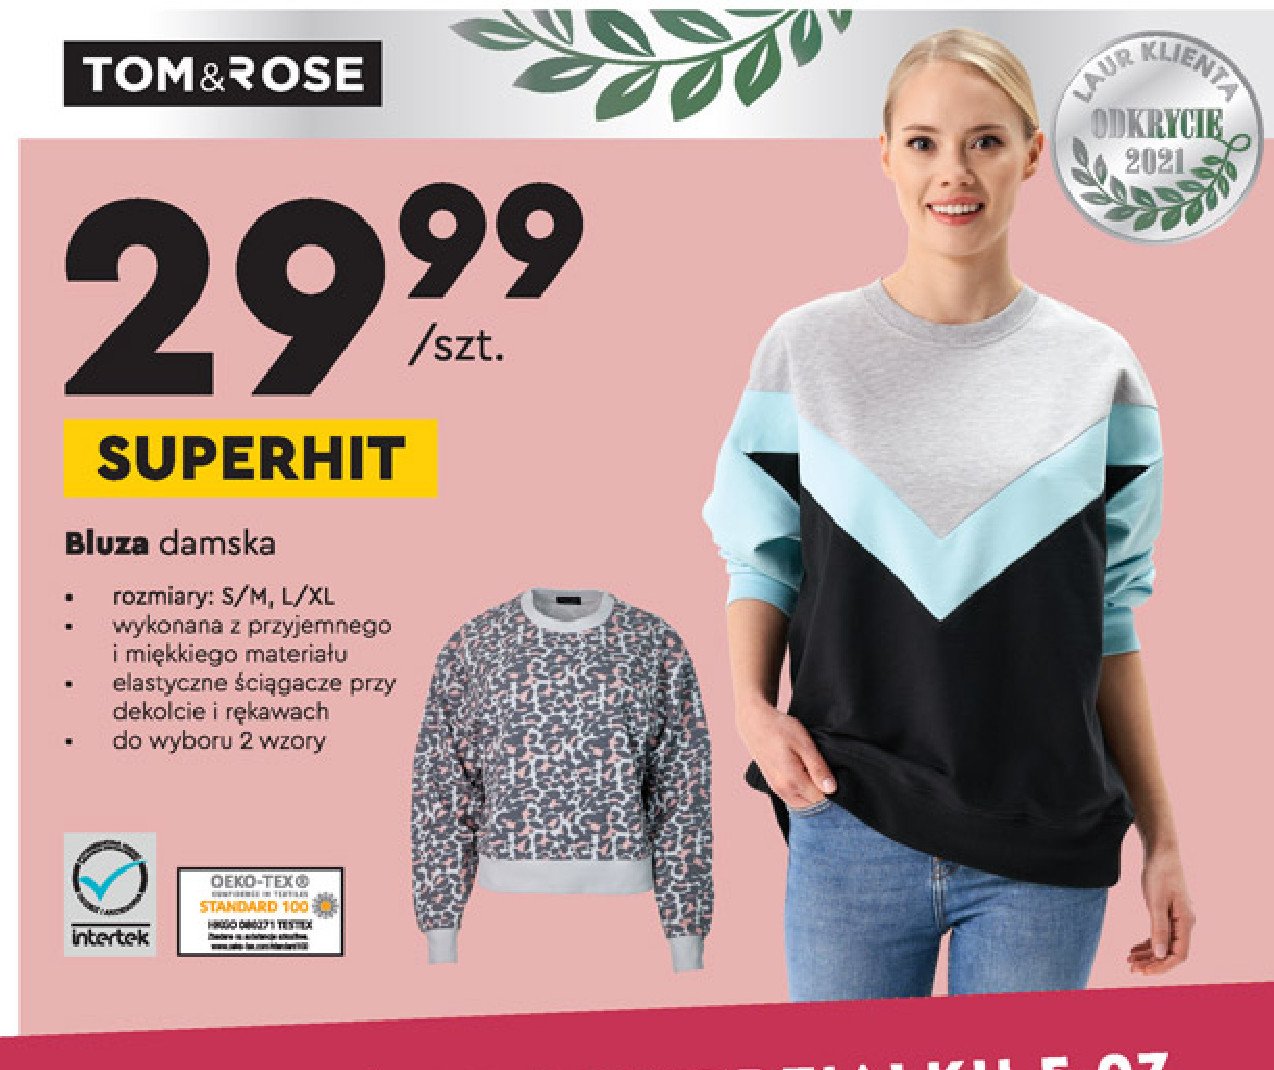 Bluza damska s/m Tom & rose promocja